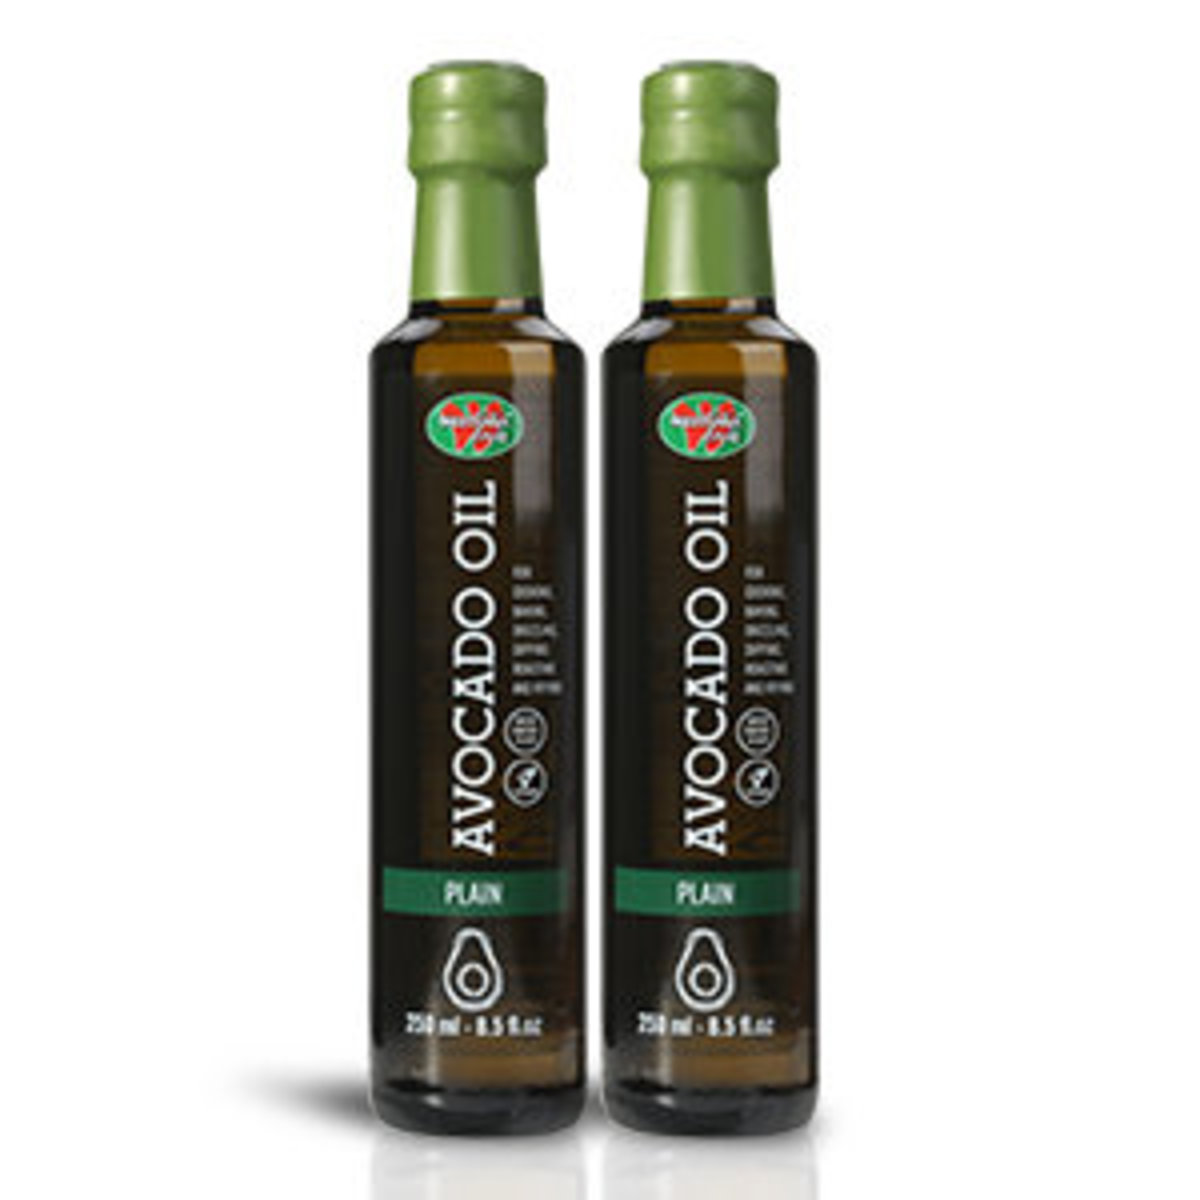 Westfalia Fruit Avocado Oil - Plain (2 bottles x 250ml) - South Africa BEST BEFORE: Dec/2025